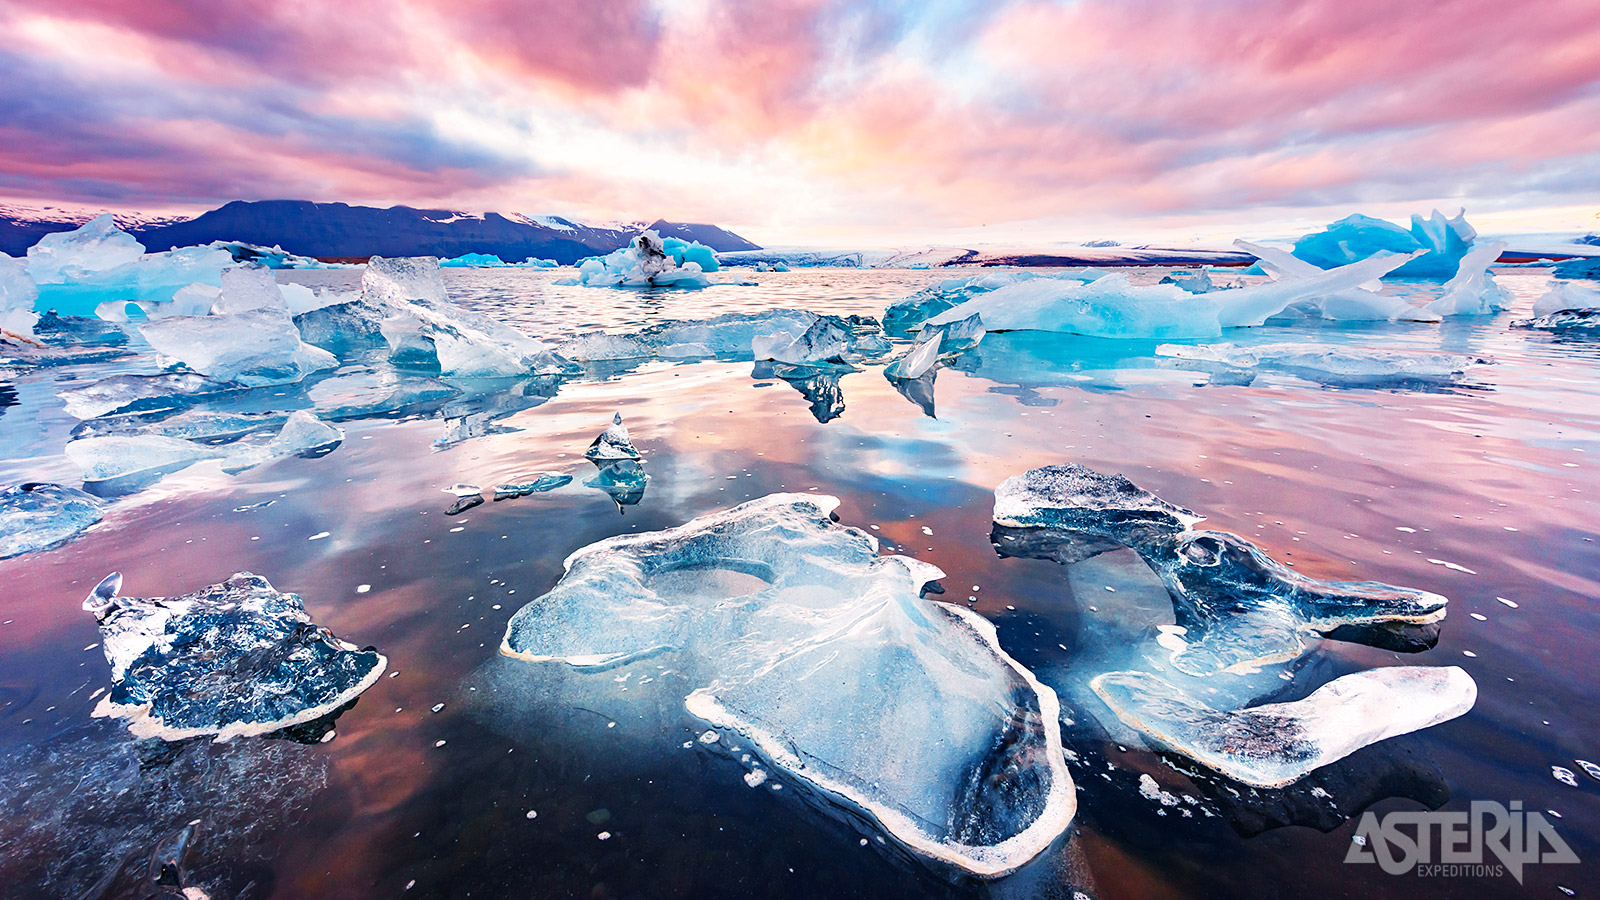 Het Jökulsárlón-glestsjermeer is het jaar rond bezaaid met fotogenieke ijsbergen die traag hun weg naar de zee vinden